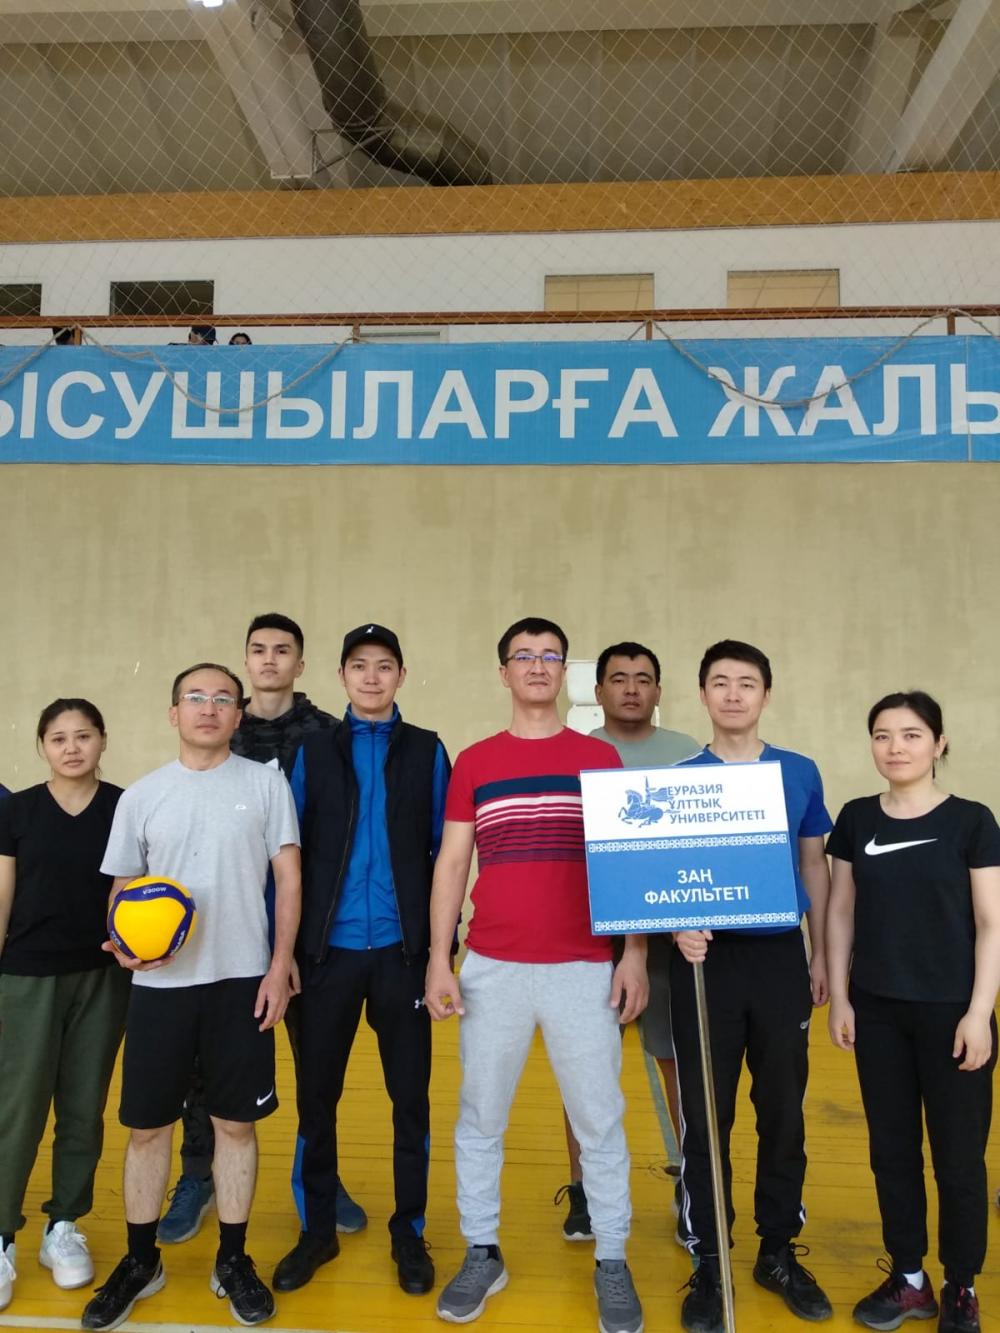 Профессорско-преподавательский состав юридического факультета принял участие в турнире по волейболу